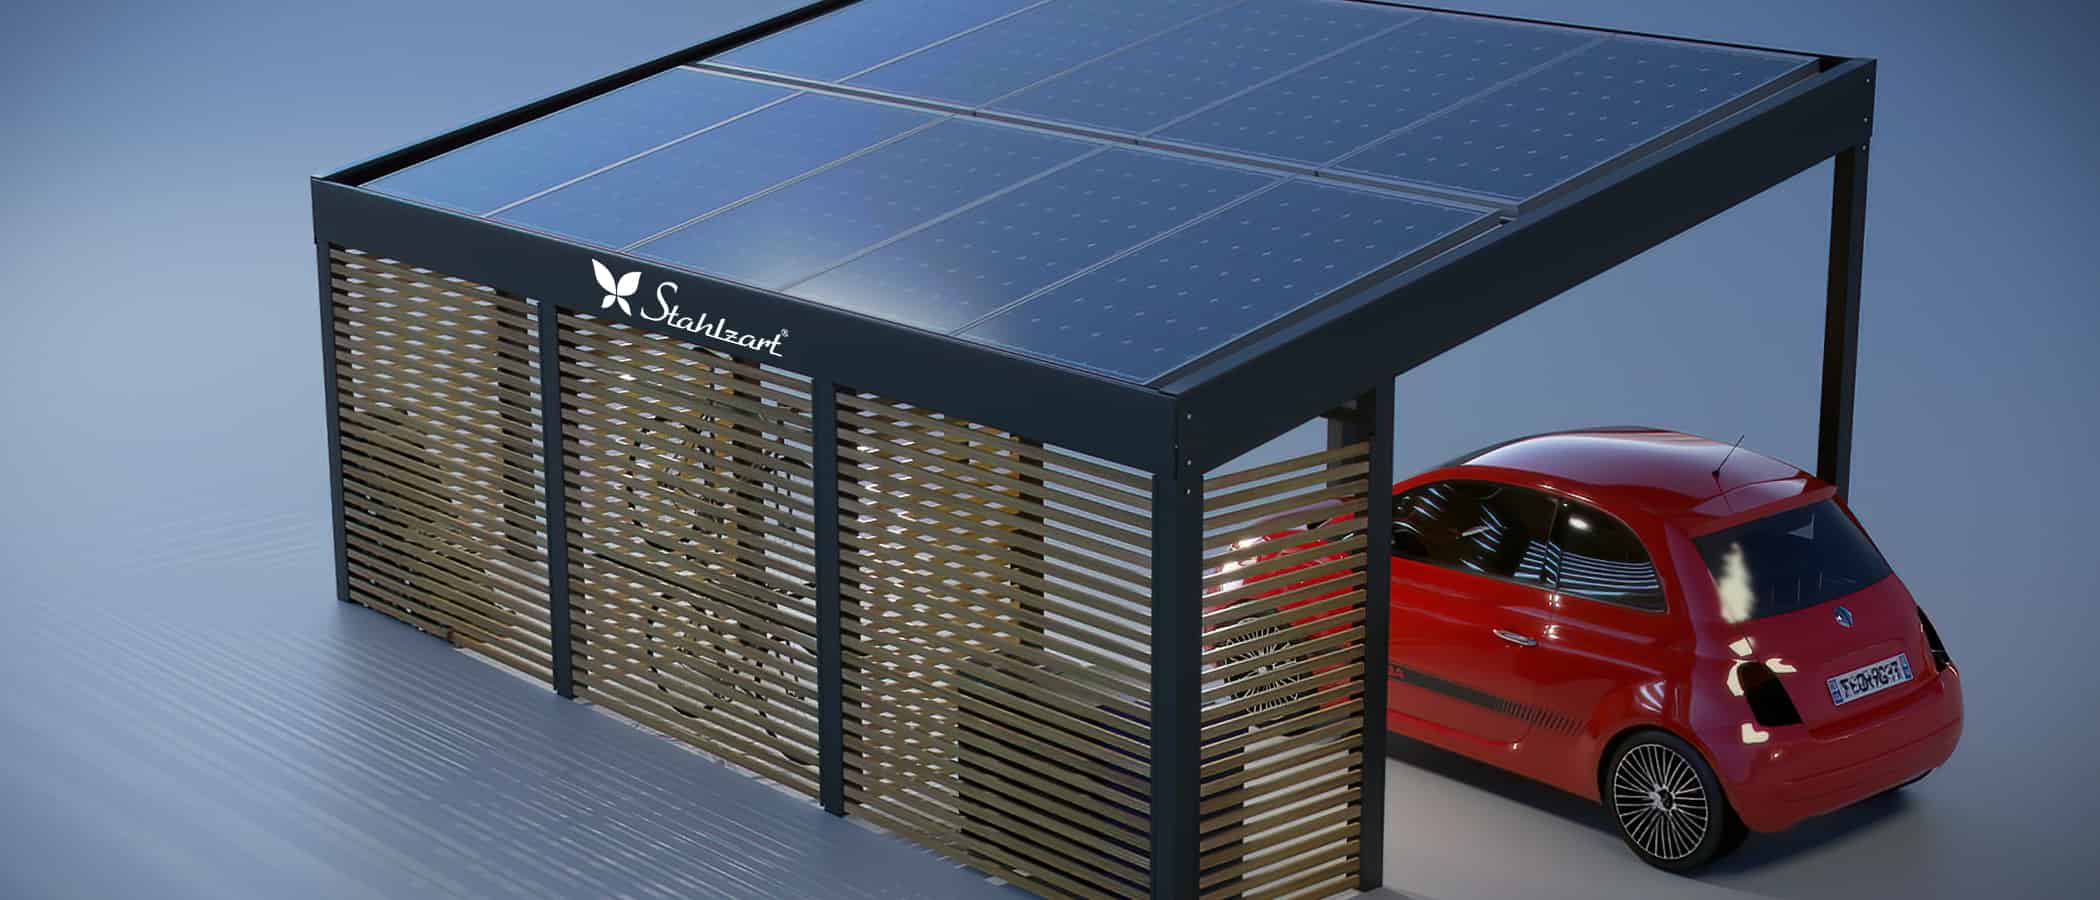 stahlzart-solar-carport-carports-e-fahrzeuge-solaranlage-strom-solarcarport-e-auto-kosten-30-jahre-dach-photovoltaik-schraegdach-muelltonnen-fahrraeder-fiat-500-vorteile-fragen-holz-metall-stahl